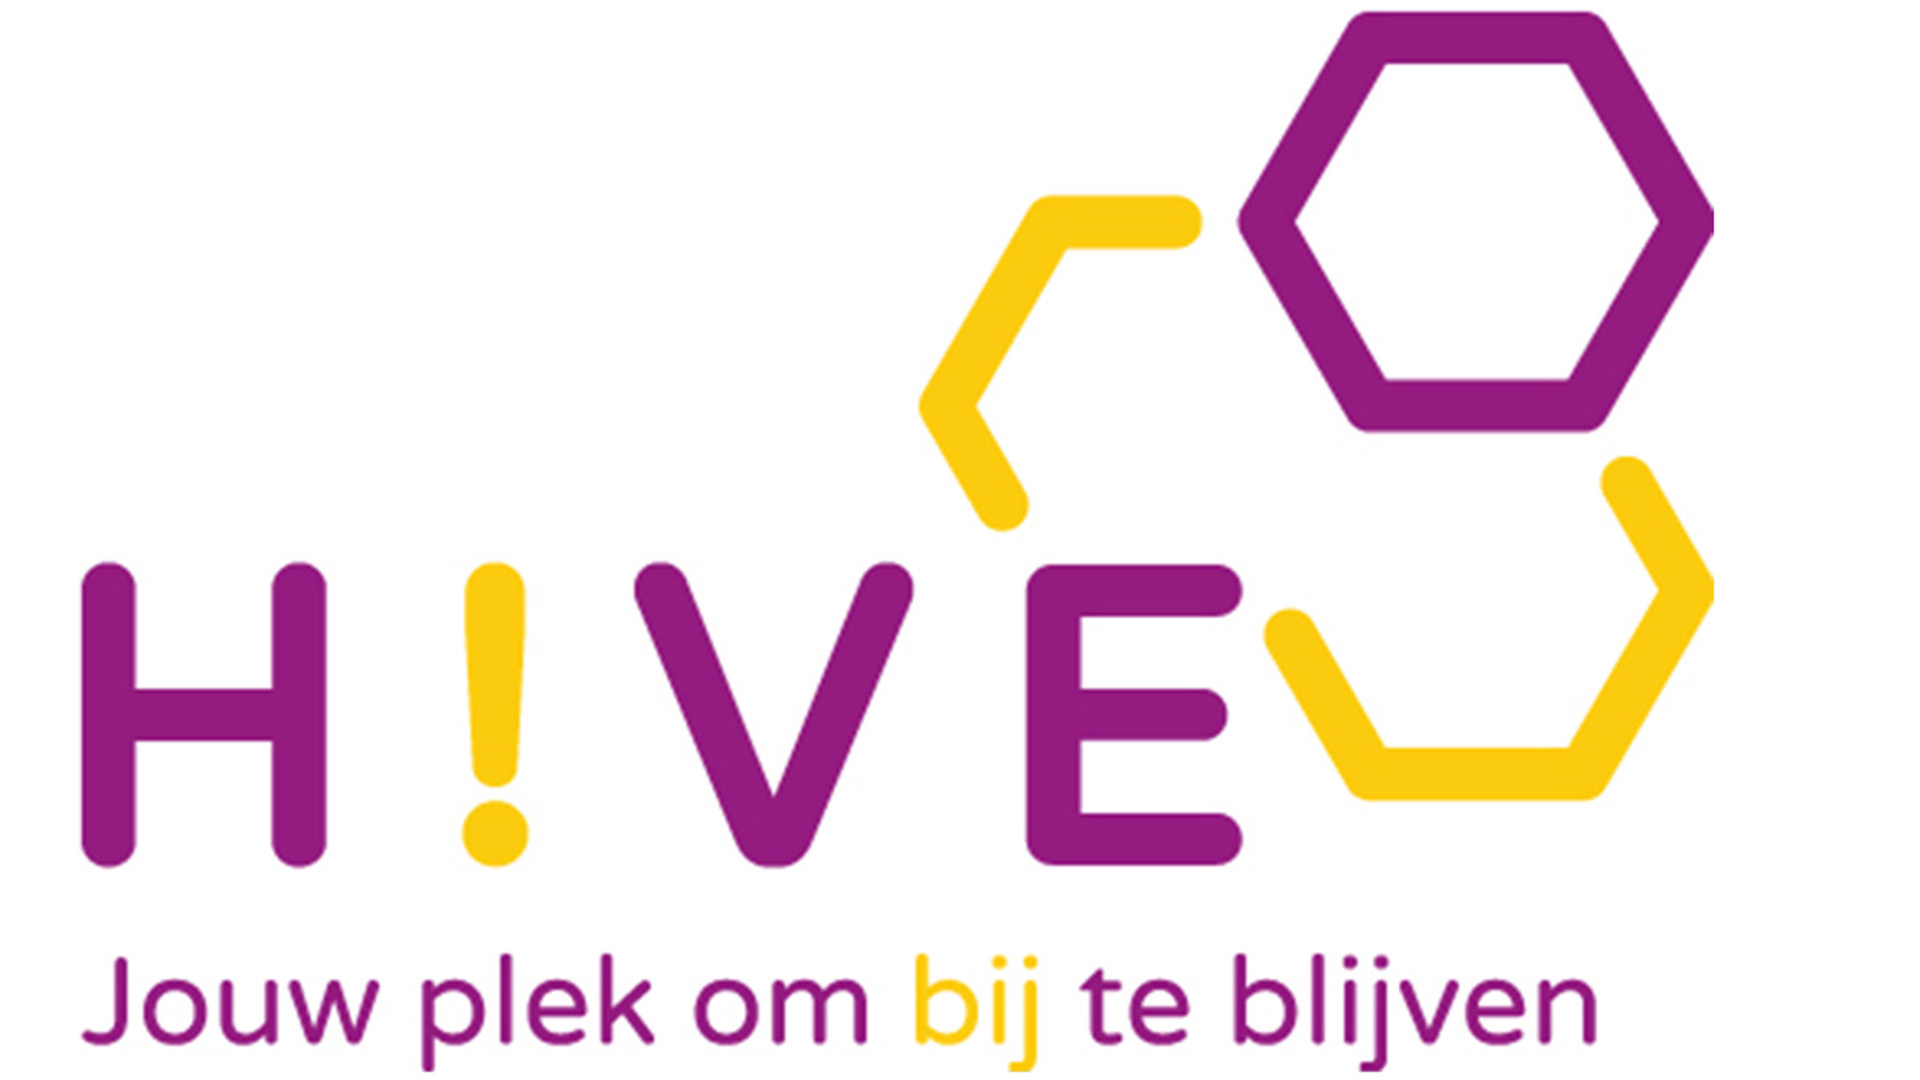 Hive: Een community om te werken aan vaardigheden van de 21ste eeuw.